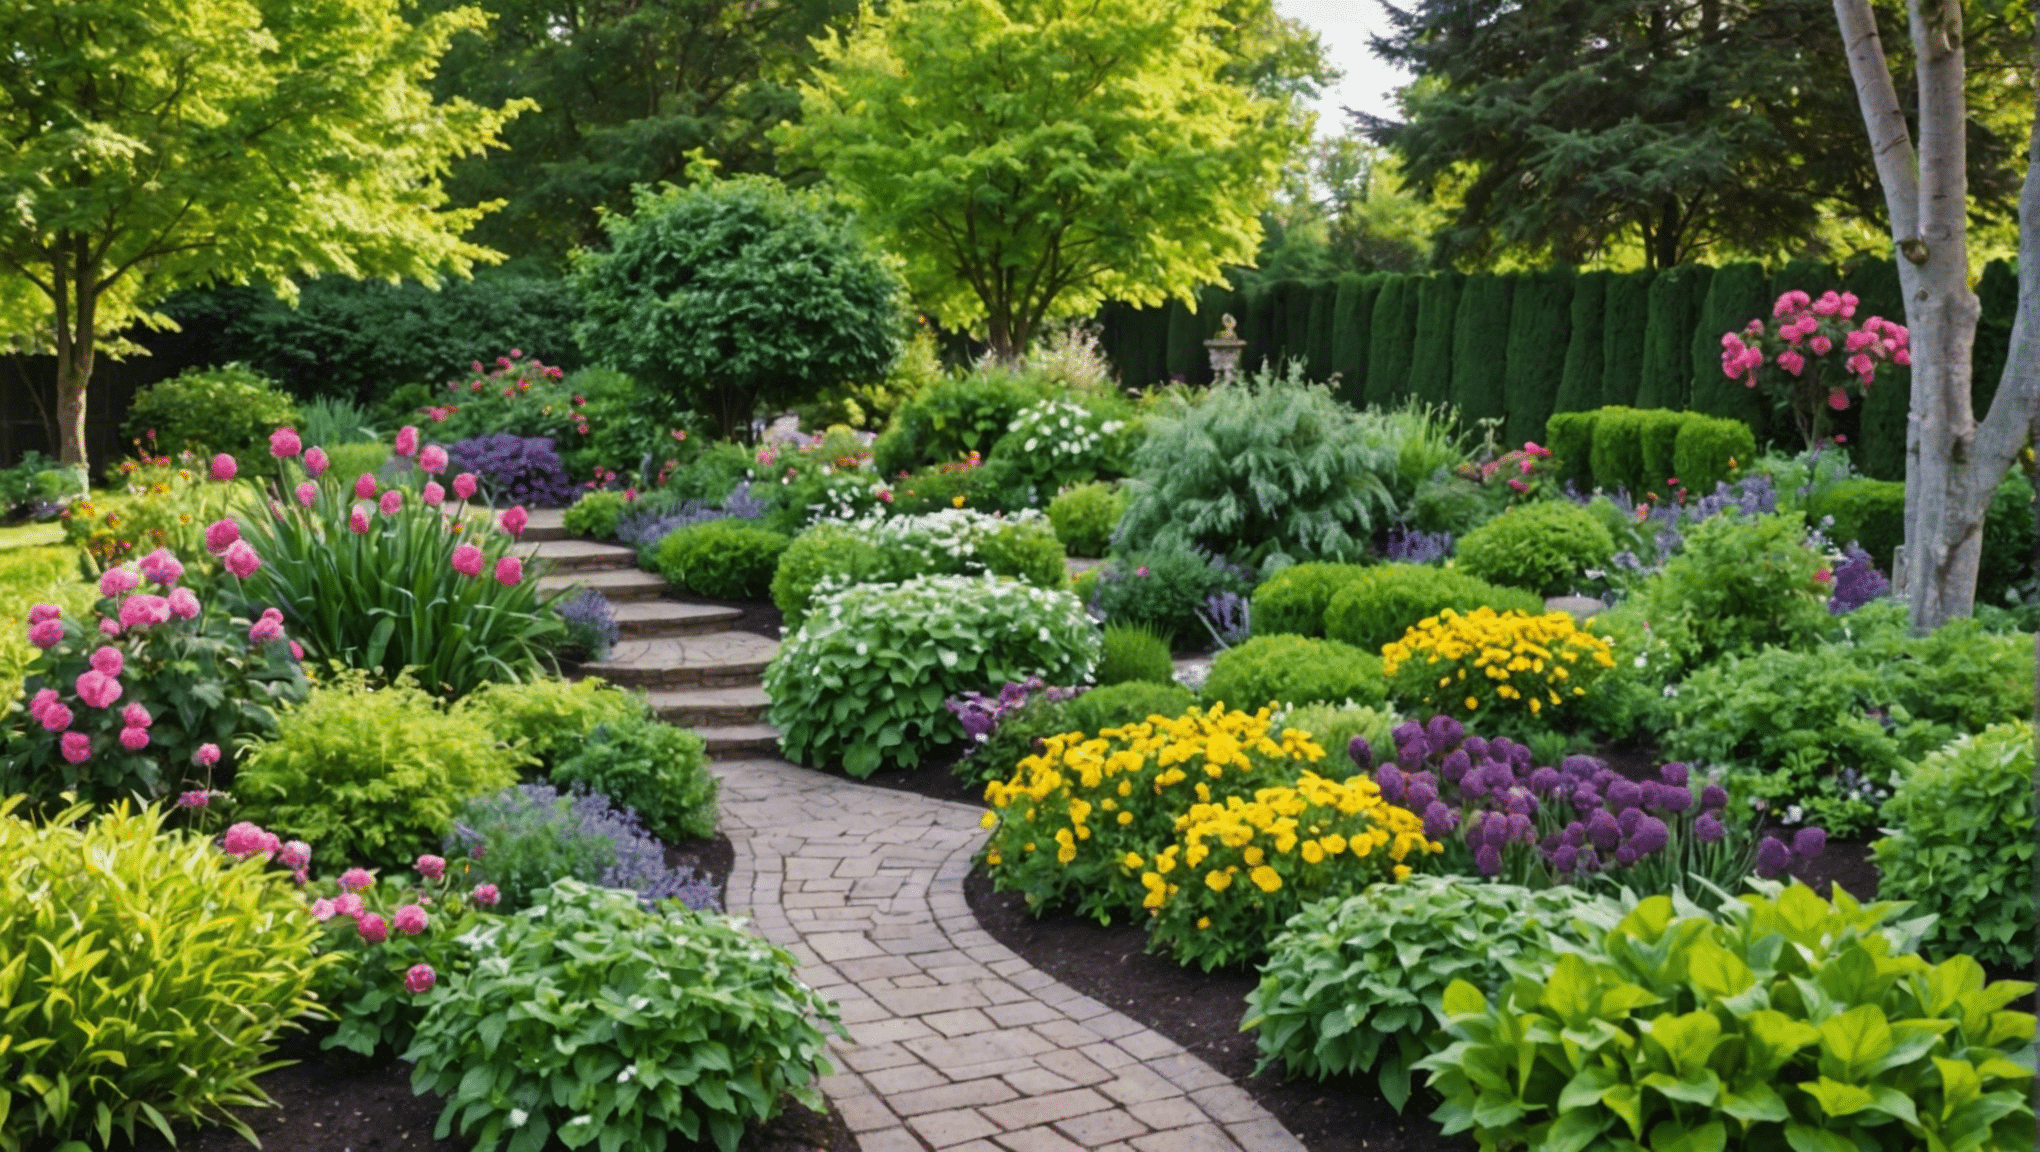 odkryj niezbędne książki o ogrodnictwie dla początkujących i rozpocznij swoją przygodę z ogrodnictwem dzięki poradom ekspertów i praktycznym wskazówkom.